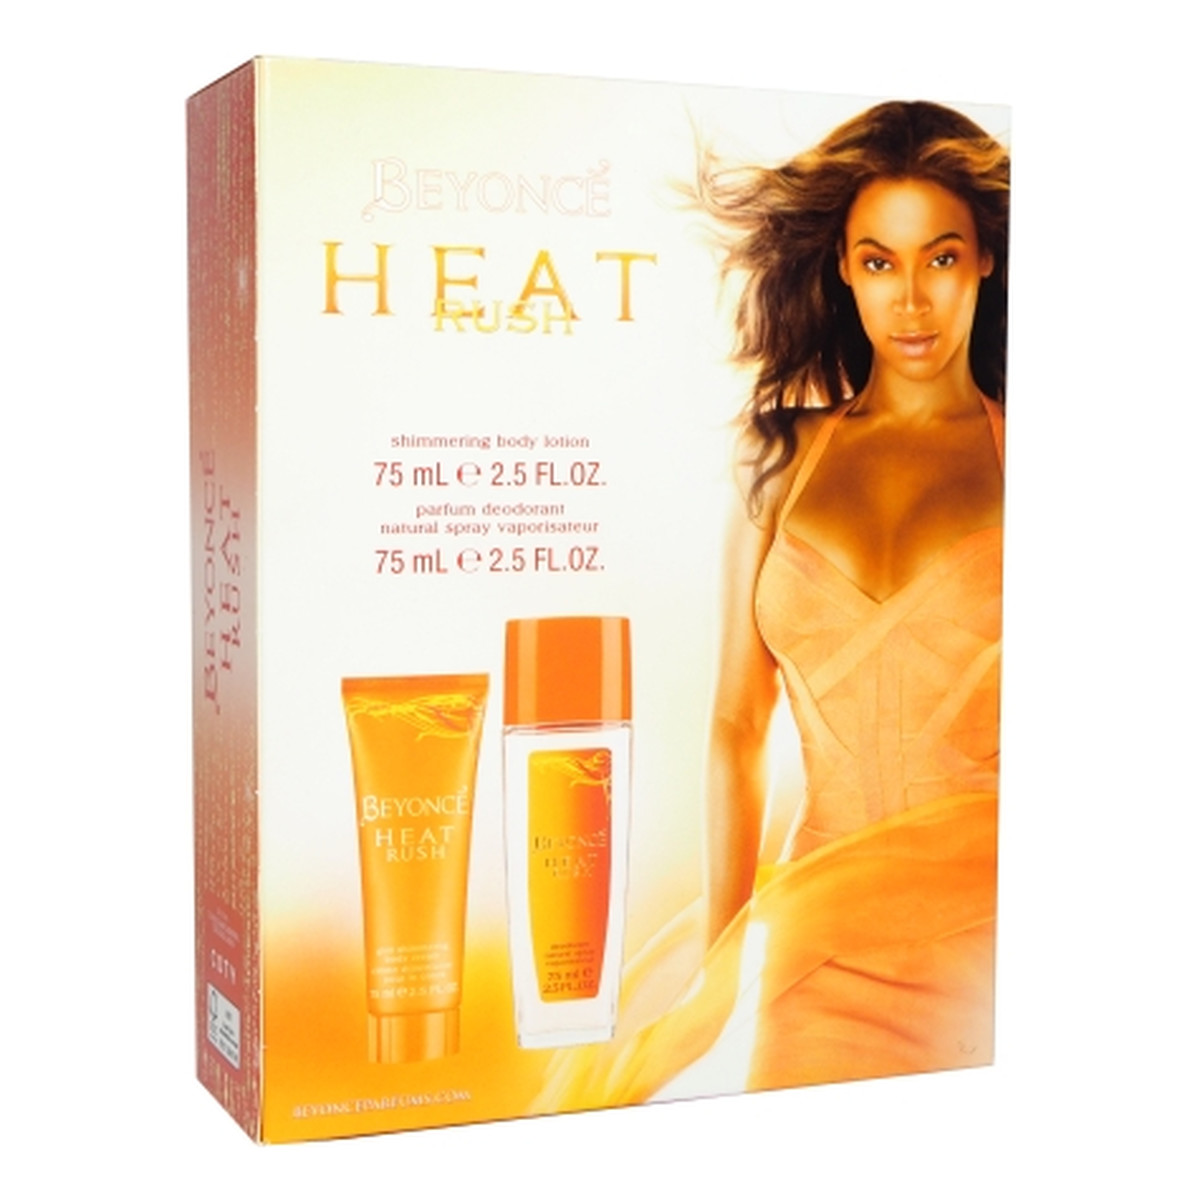 Beyonce Heat Rush Zestaw dezodorant spray glass 75ml + balsam do ciała 75ml